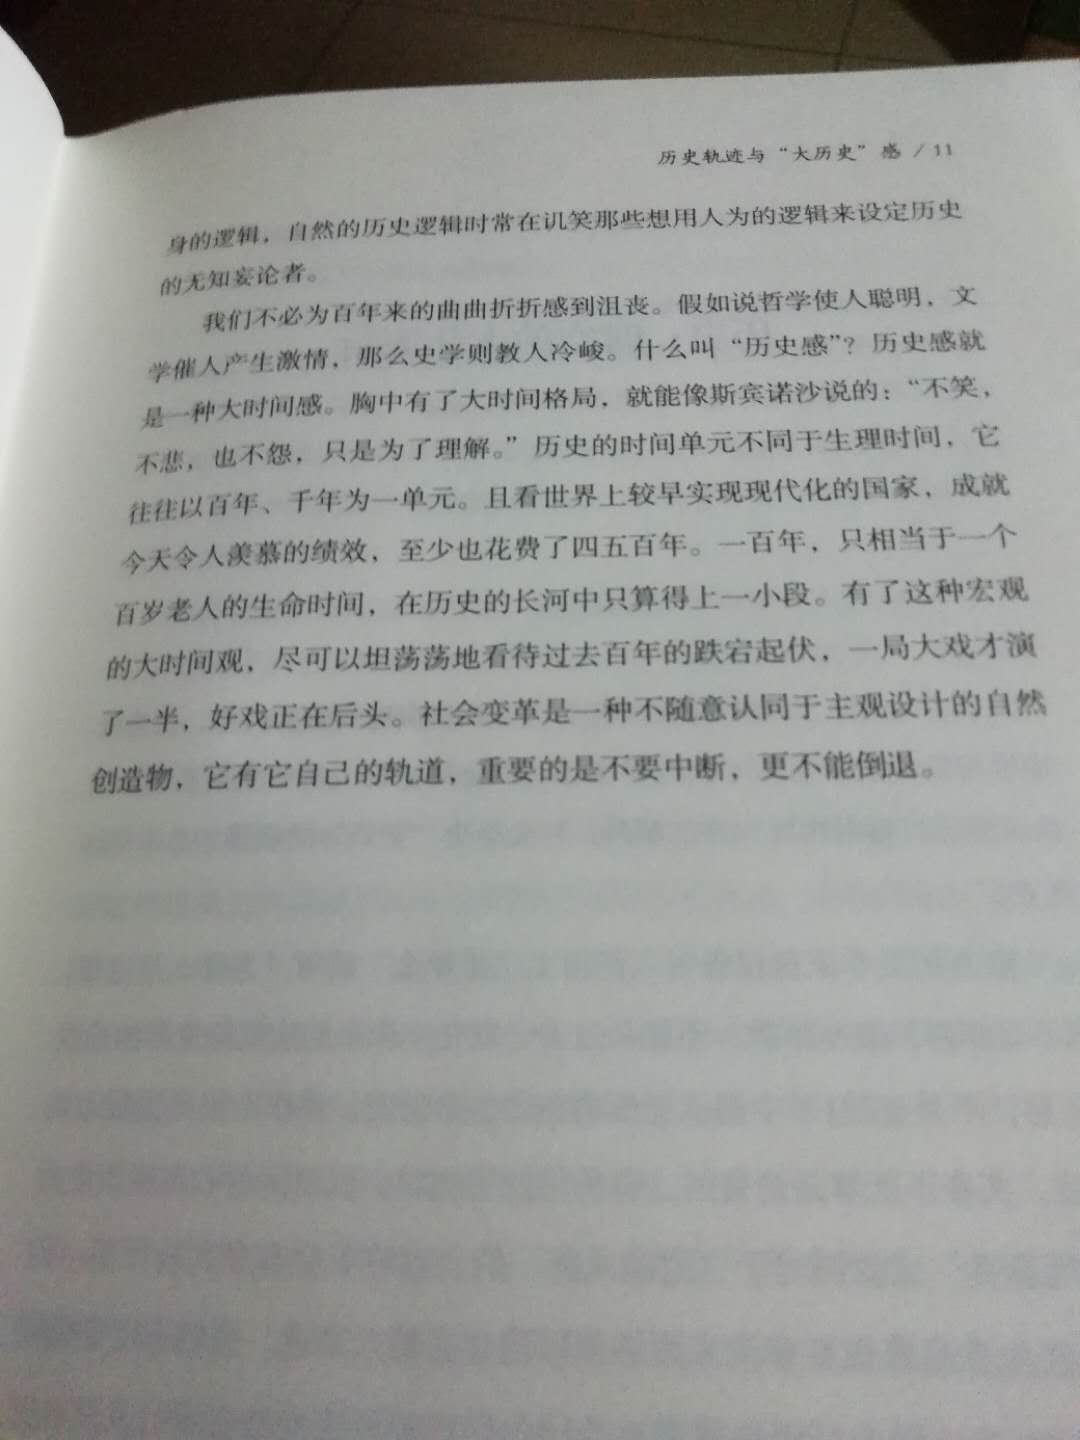 继中国历史通论后王家范先生的又一大做，读来颇多意见相合之处，先生已作古，不甚唏嘘。